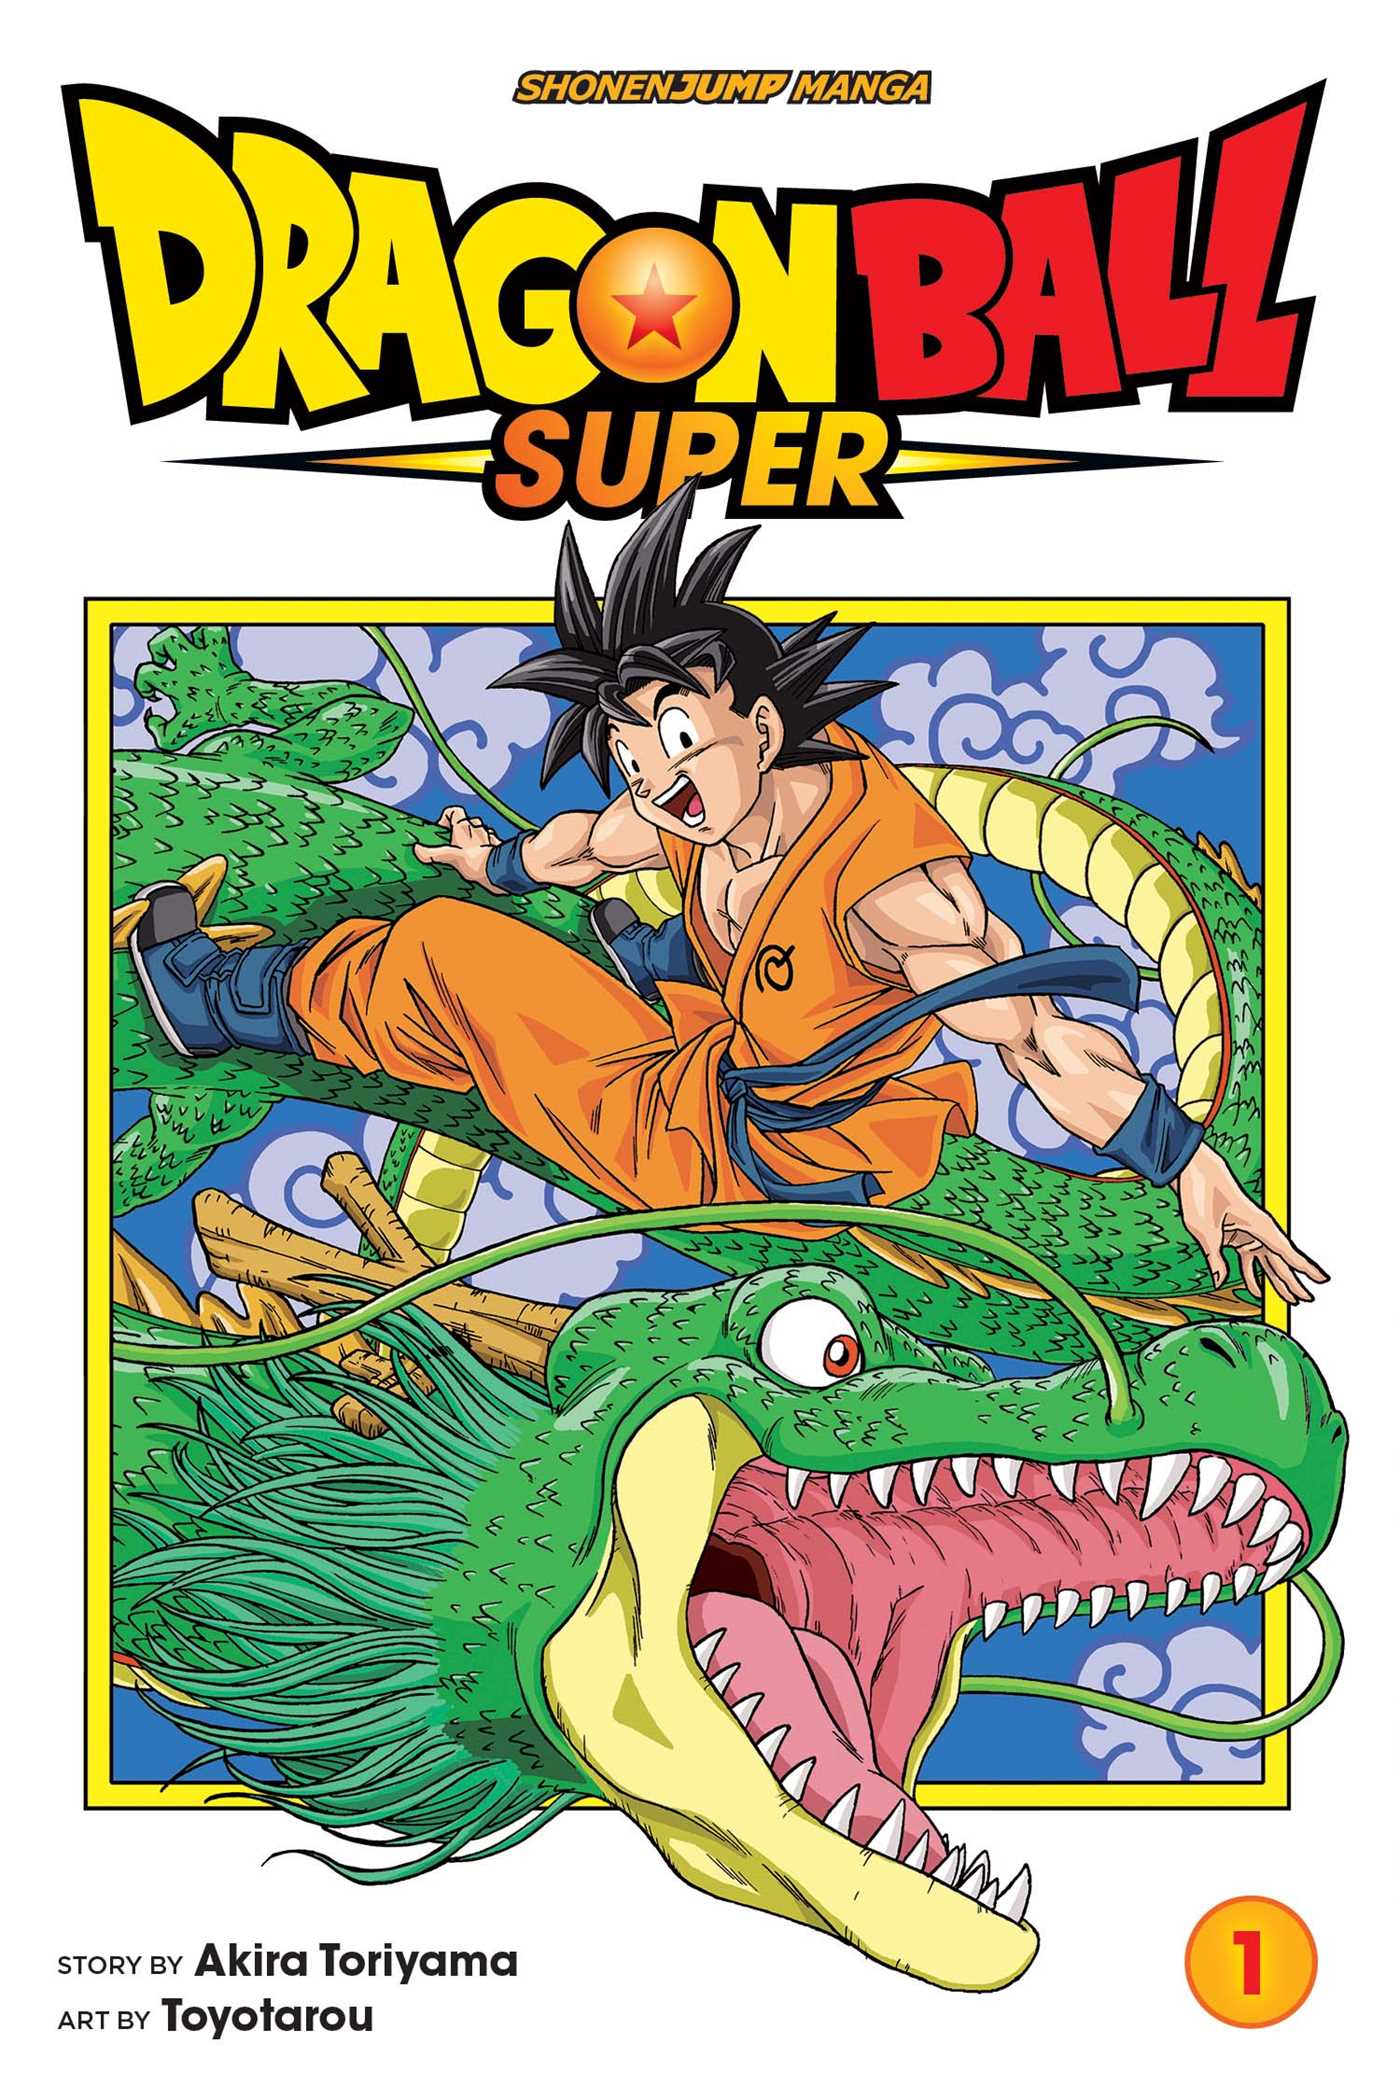 Manga LEGEND OF THE LEGENDARY HEROES VOL.1-9 Comics Complete Set F/S